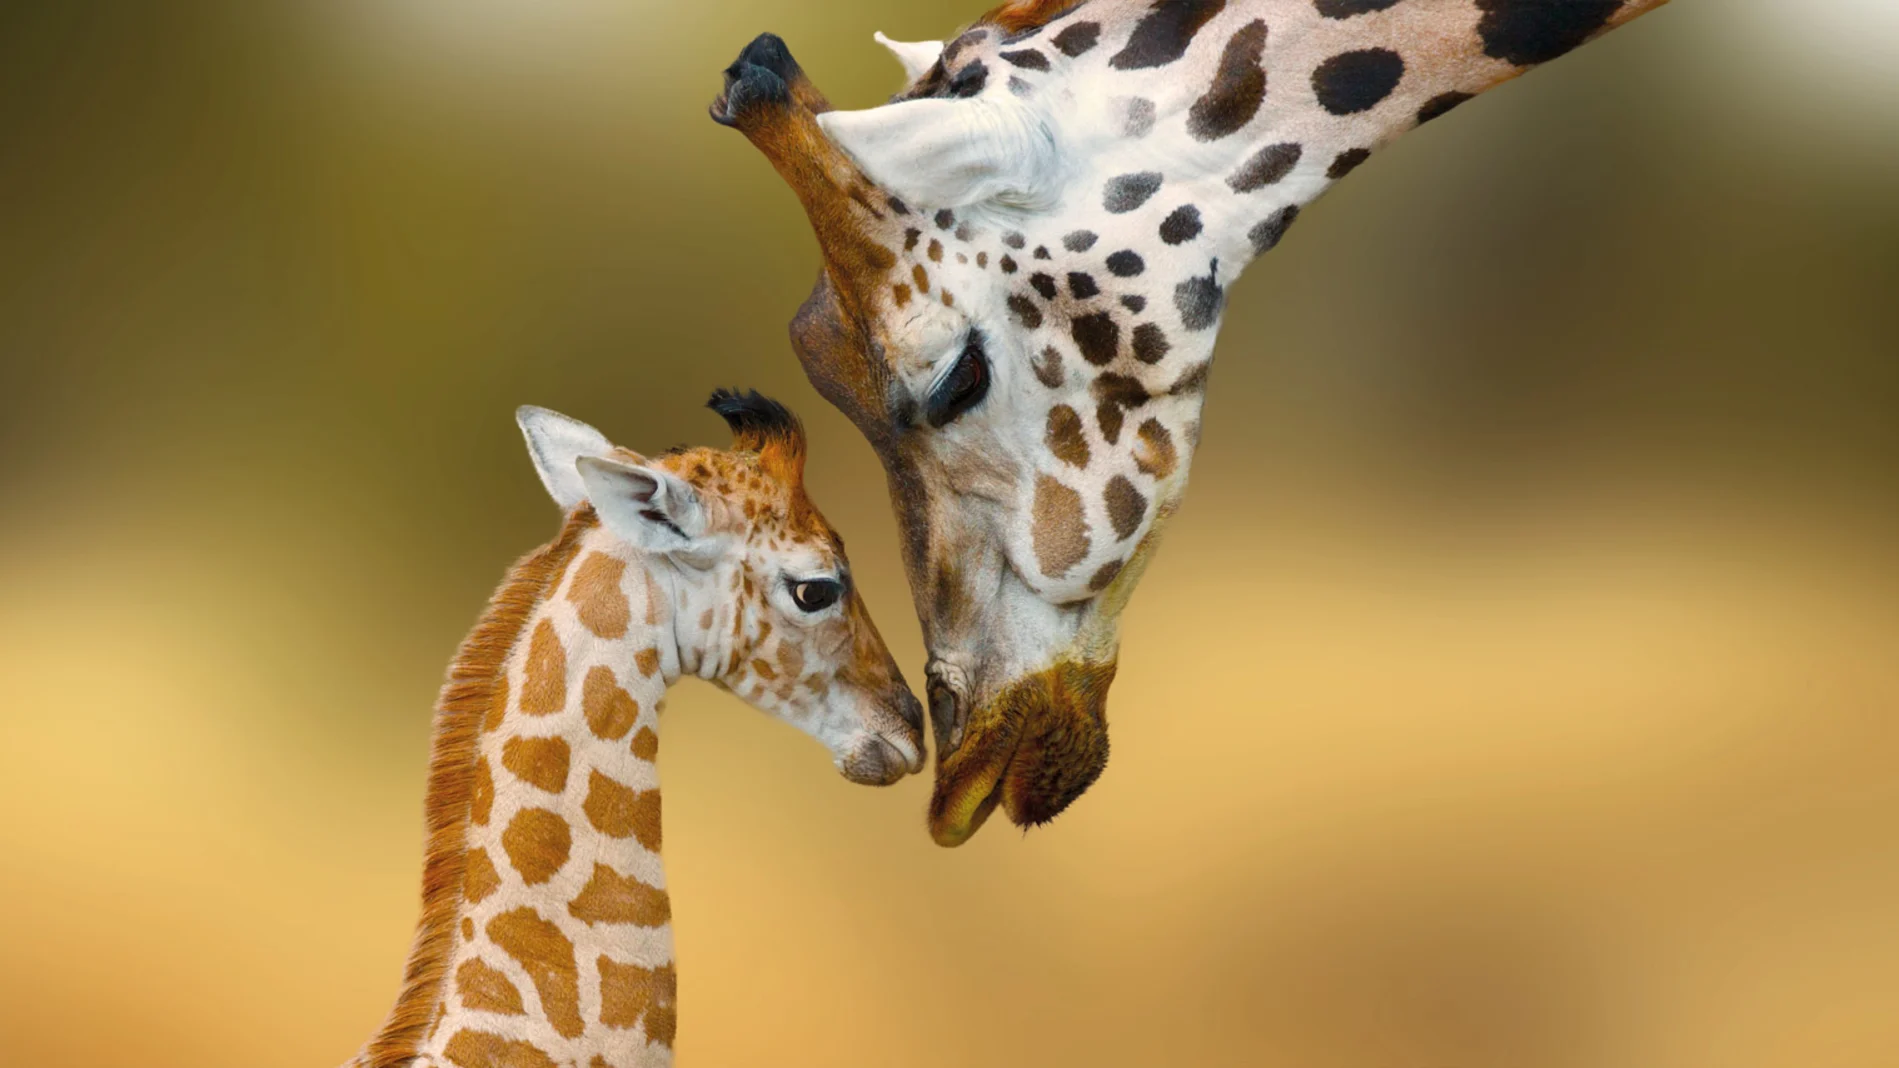 Gaiazoo Kerkrade Giraffes